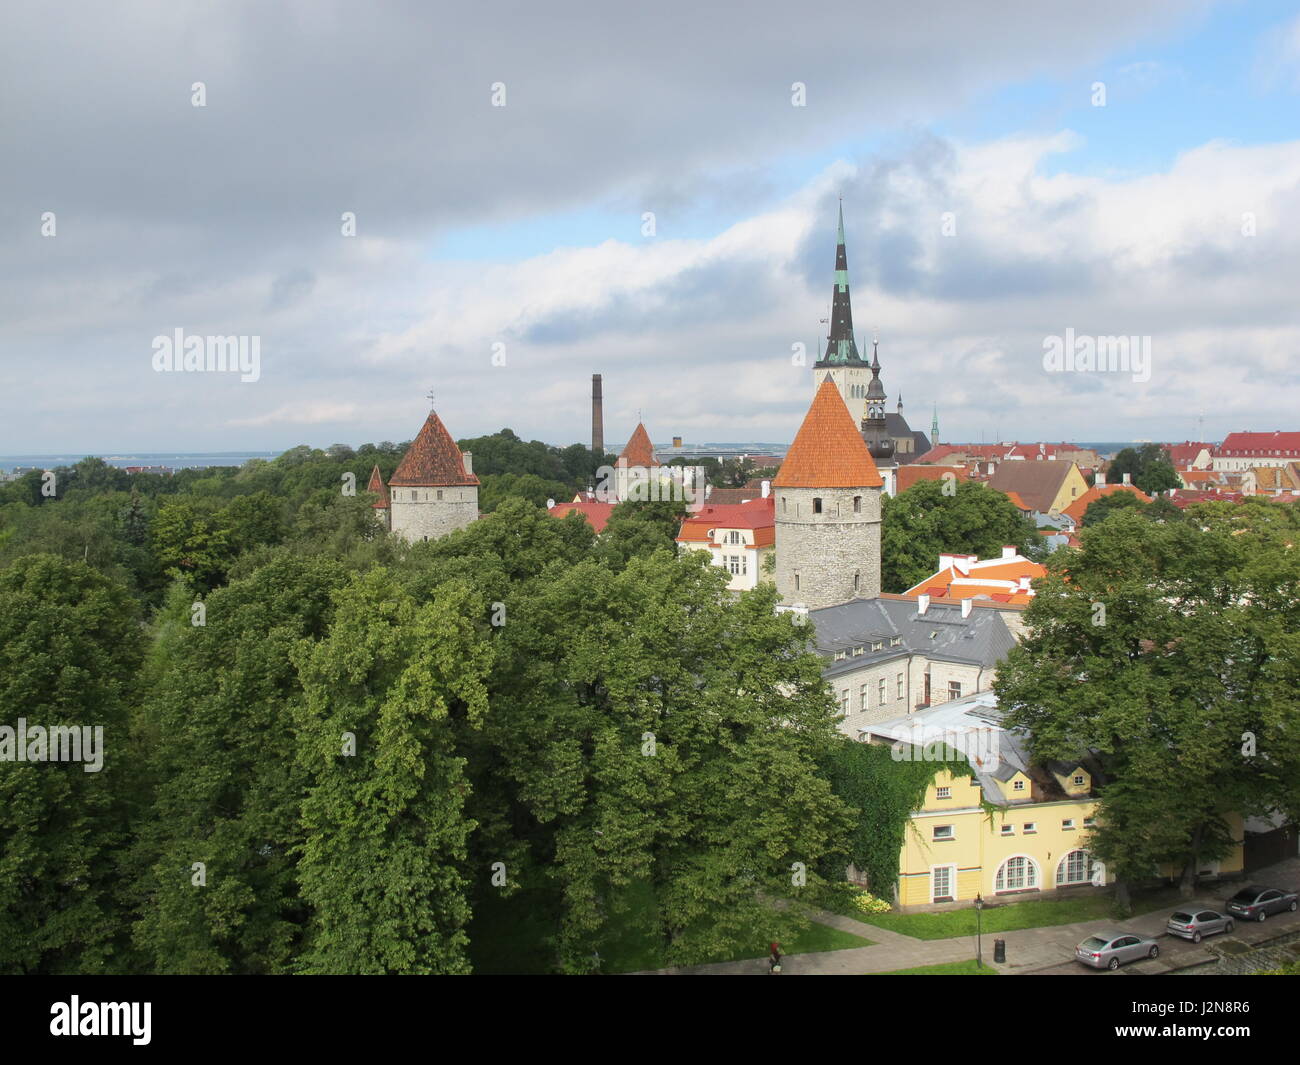 Vista da Kohtuotsa piattaforma di osservazione in Tallin, Estonia Foto Stock